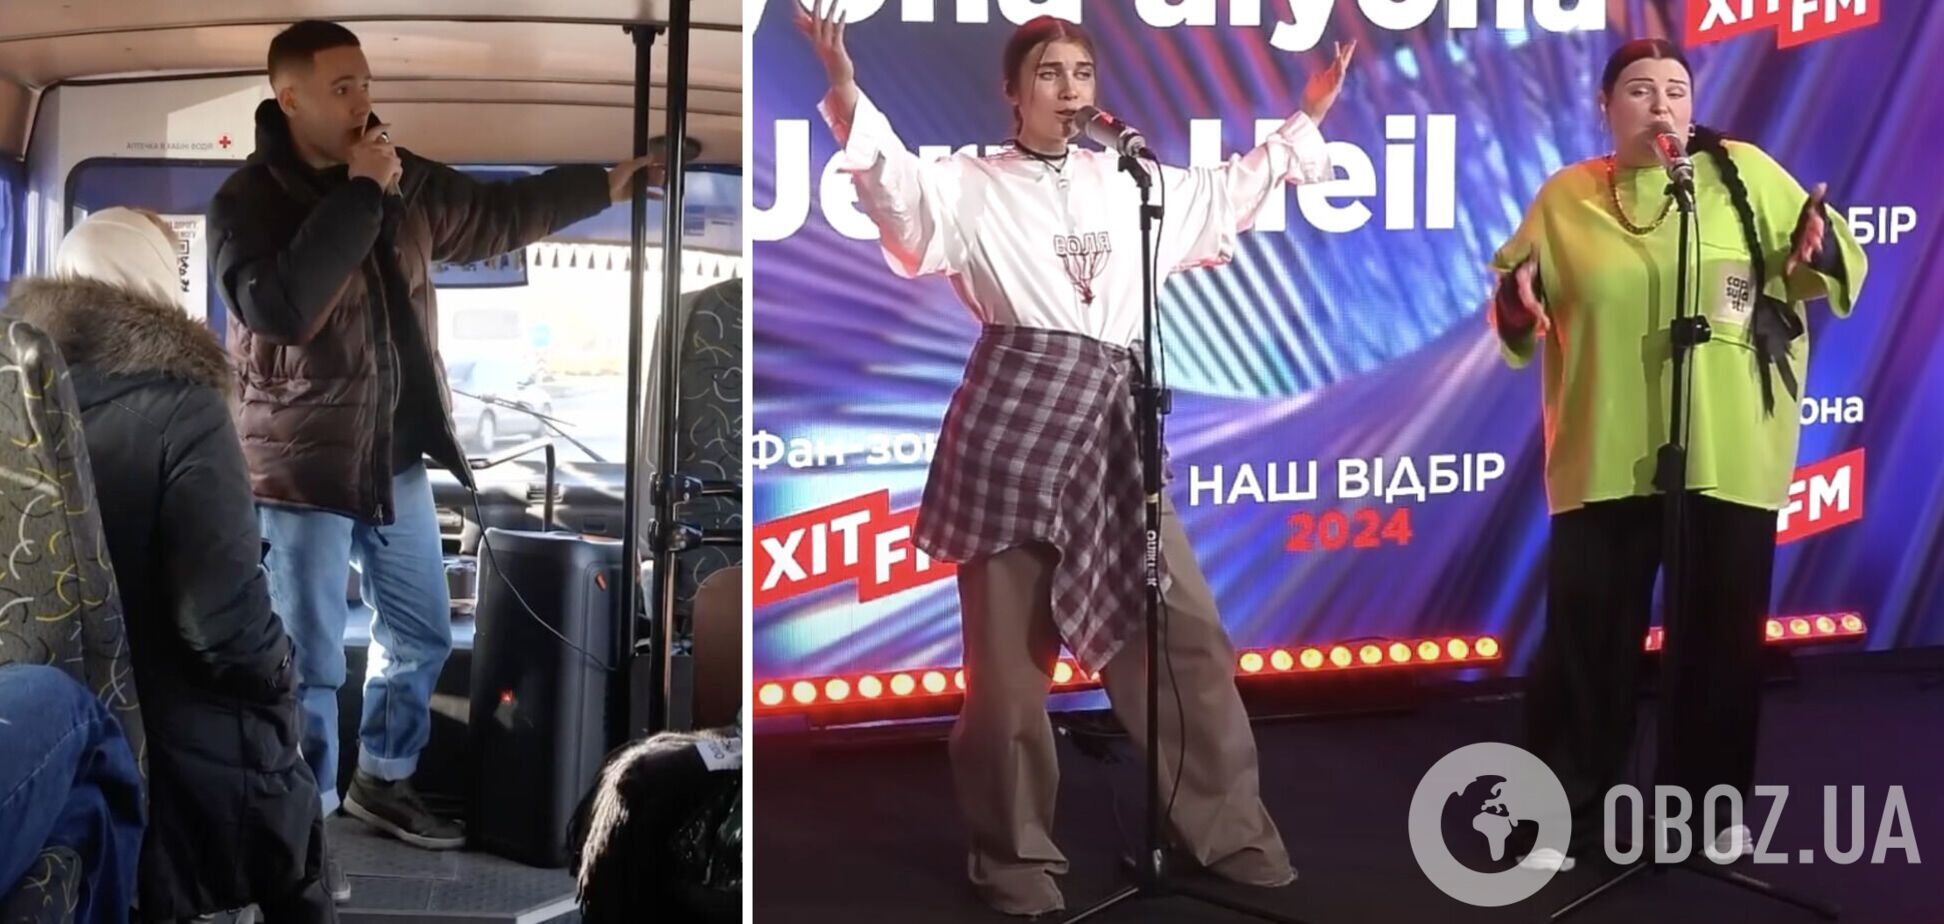 Як учасники нацвідбору піарять себе перед фіналом: Yaktak співає в автобусі, а Melovin 'топить' Jerry Heil та alyona alyona